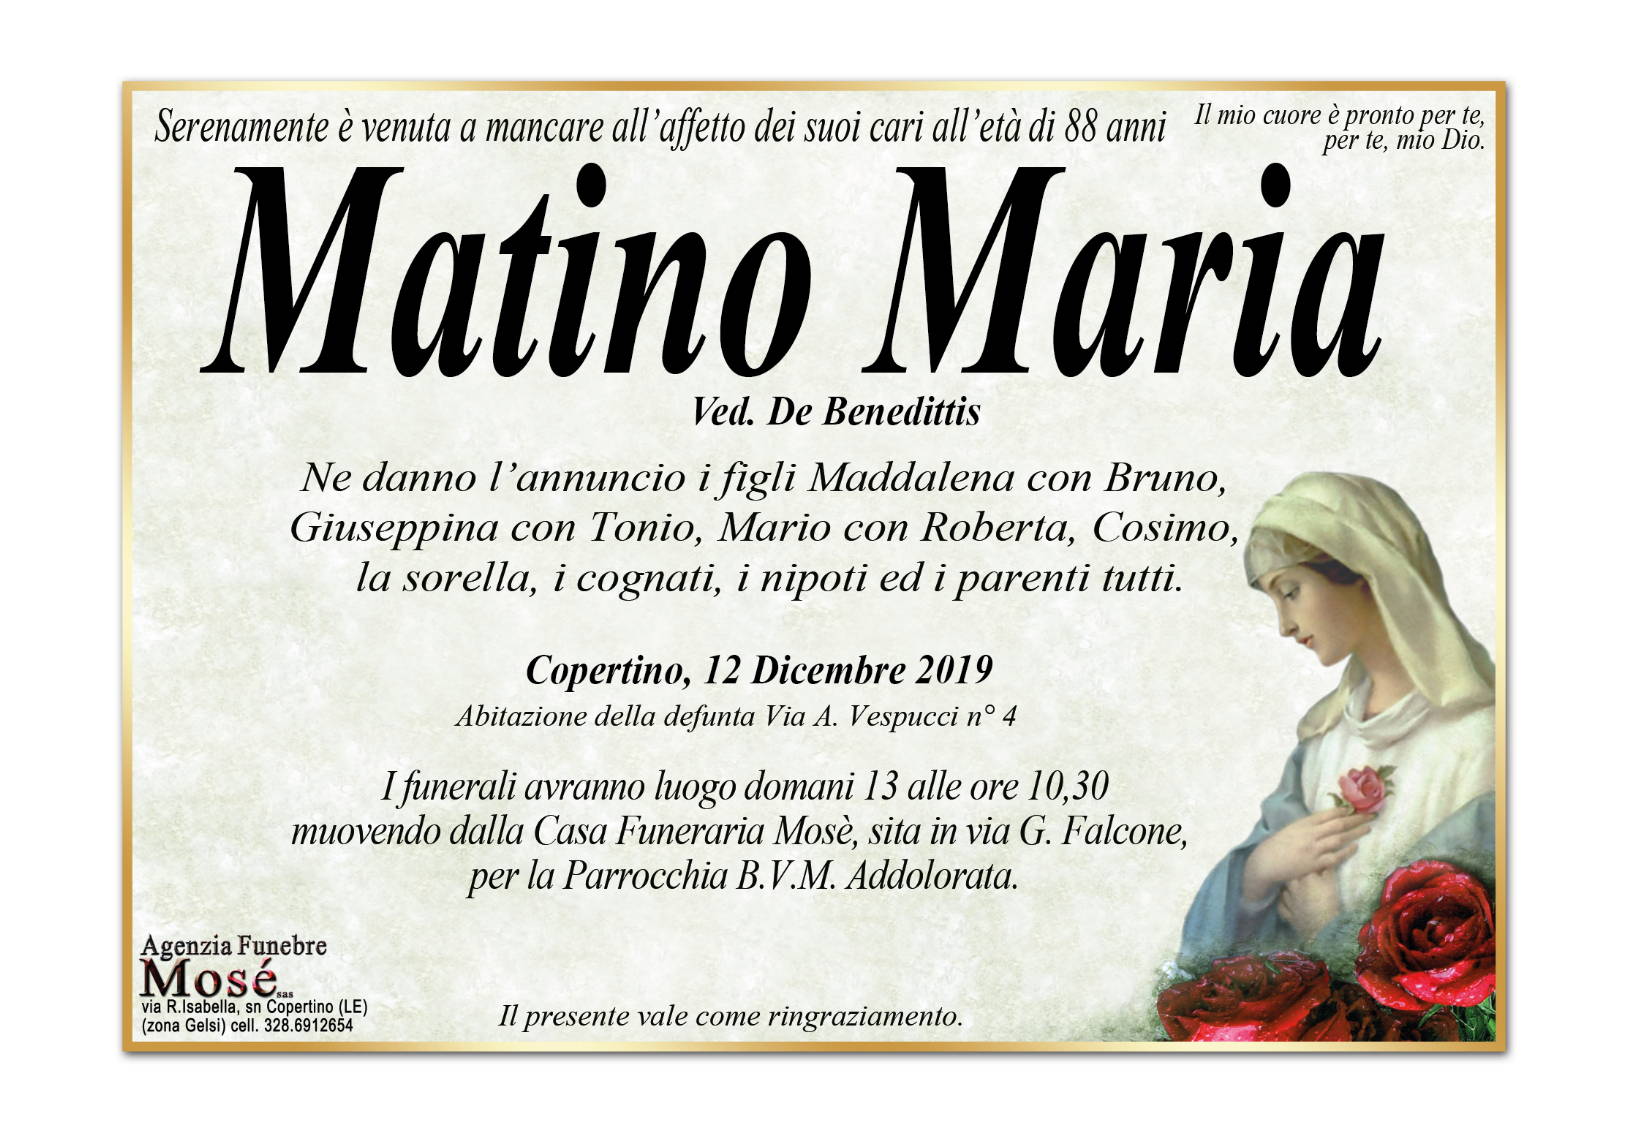 Maria Matino